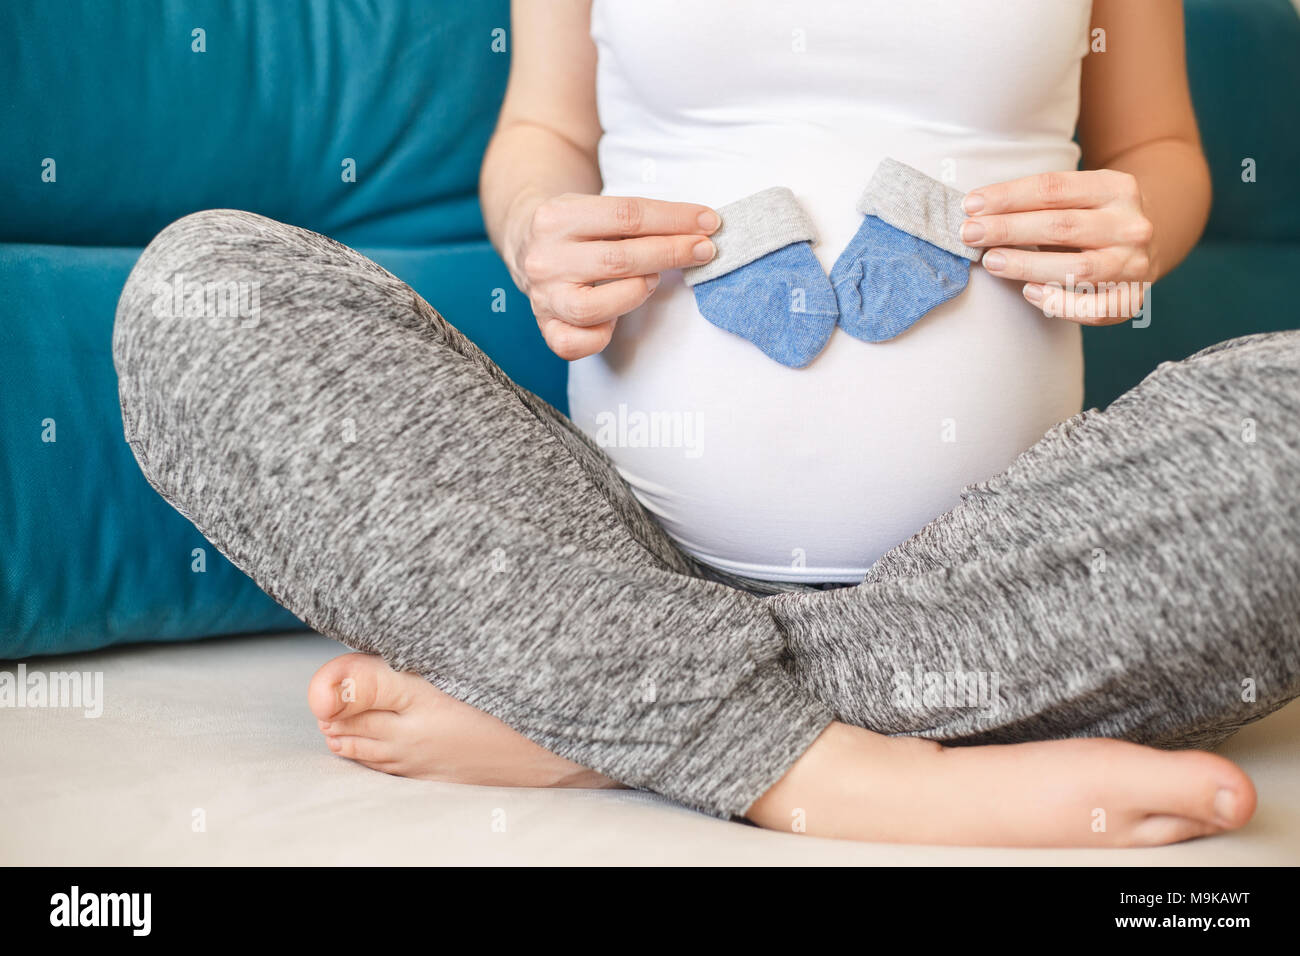 Closeup schwangere Frau mit blauen Socken auf ihren Bauch. Die werdende  Mutter. Schwangerschaft, Menschen, Erwartung von baby boy Konzept  Stockfotografie - Alamy